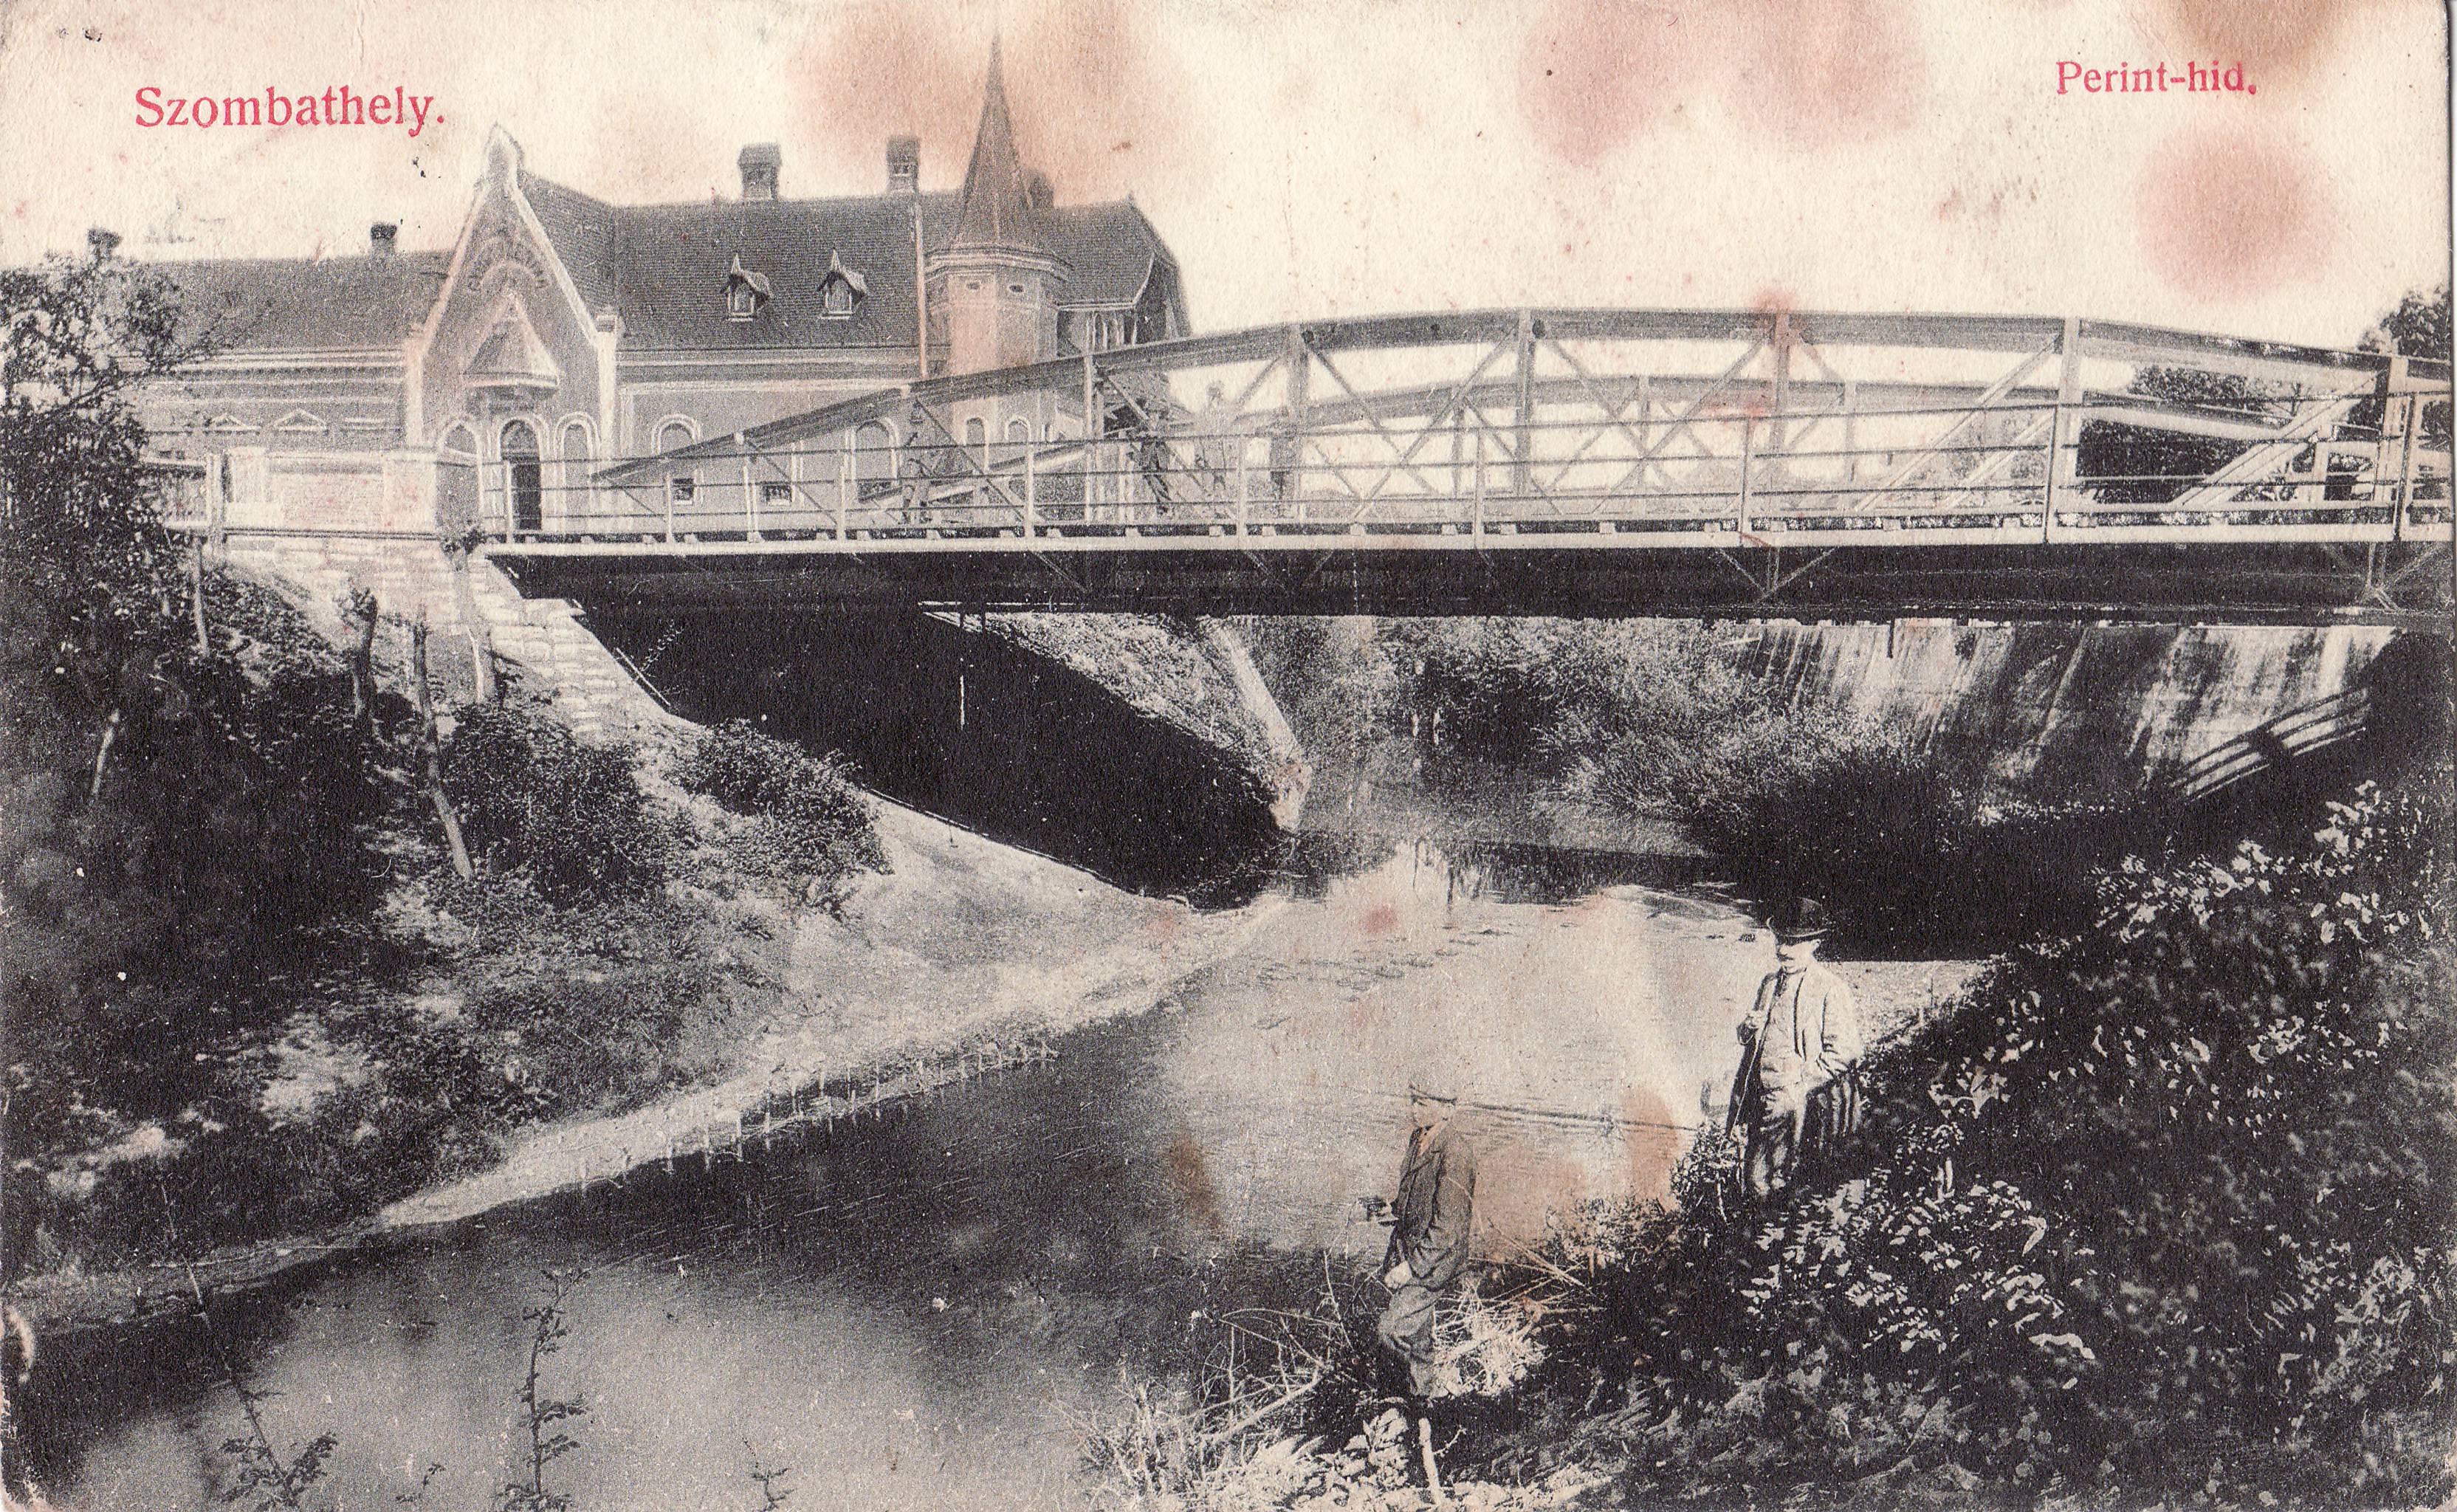 Szombathely – Perint-híd (Magyar Környezetvédelmi és Vízügyi Múzeum - Duna Múzeum CC BY-NC-SA)